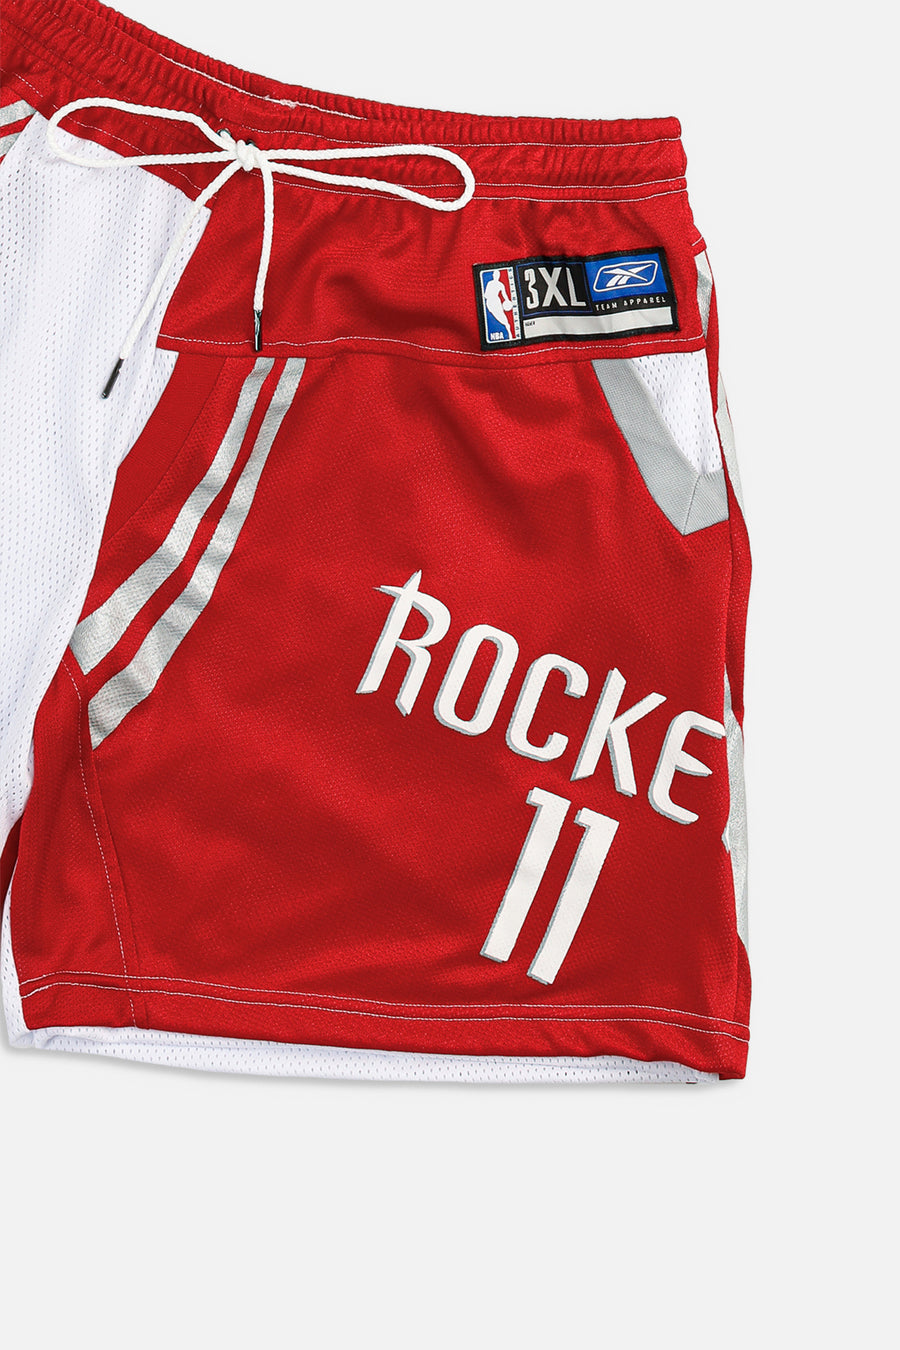 Unisex Rework Houston Rockets NBA Jersey Shorts - XXL